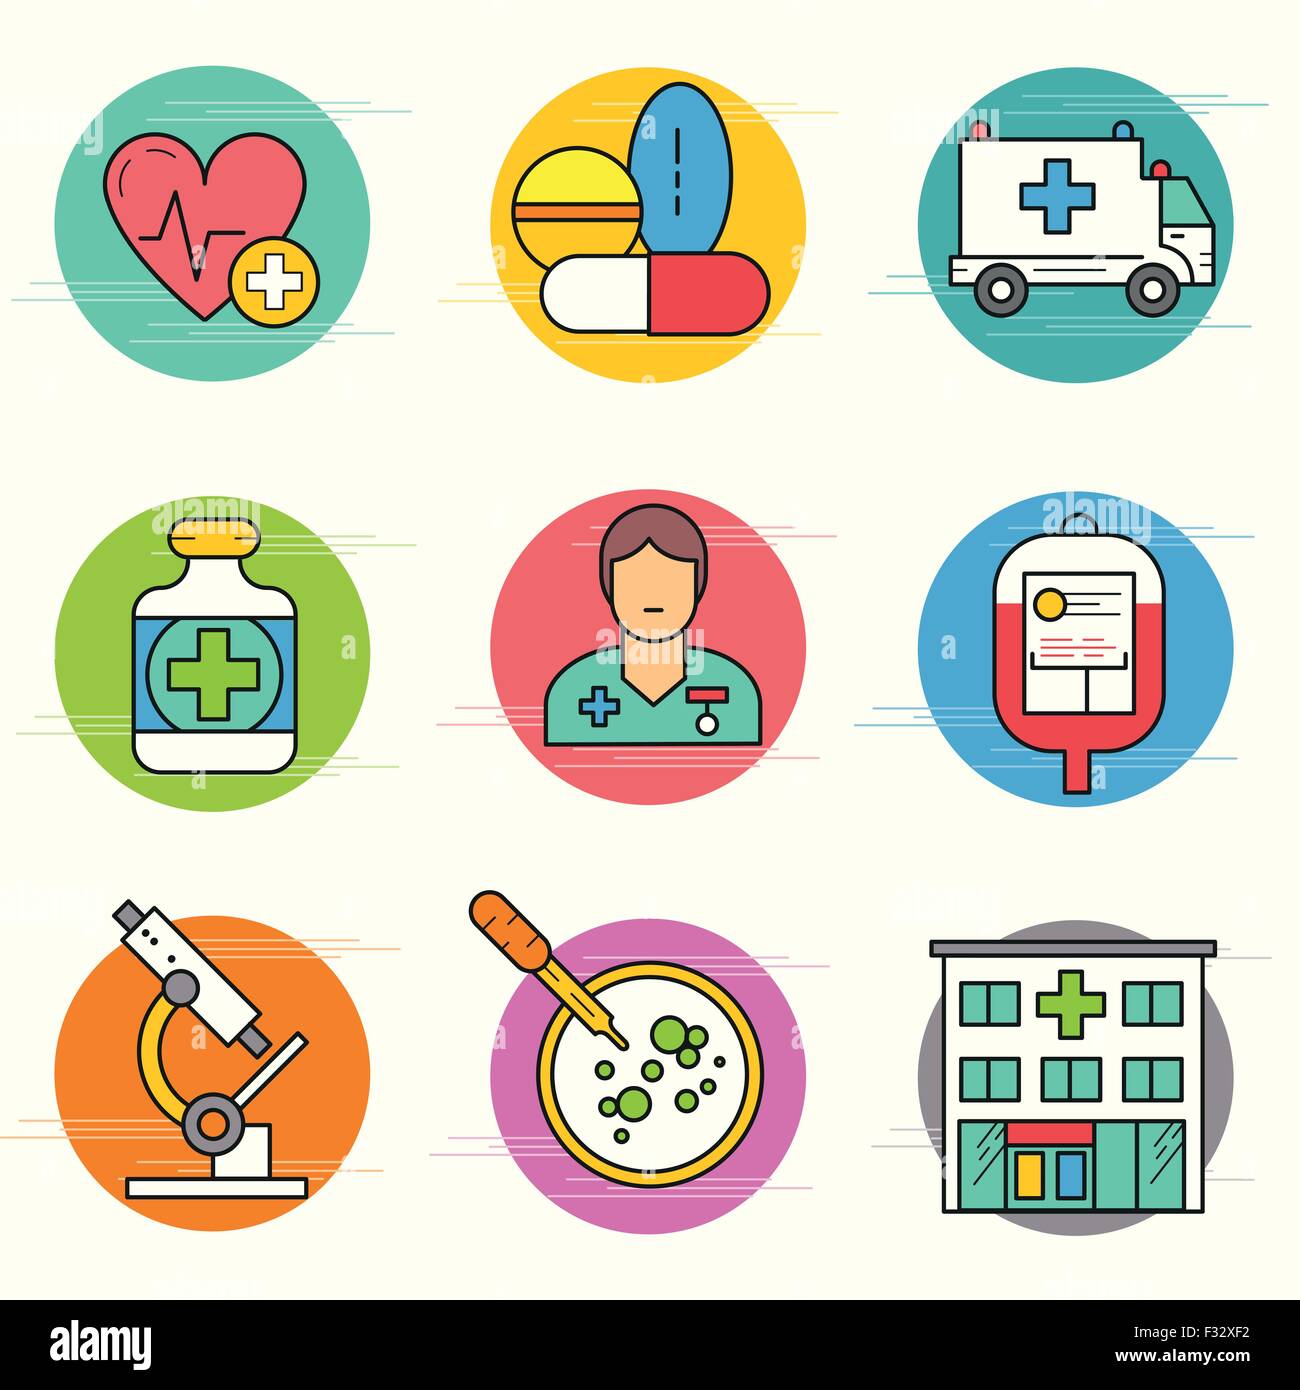 Médecine et Recherche Icon Set. Une collection d'icônes médicale notamment, les équipements, les personnes et les outils médicaux. Illustration de Vecteur